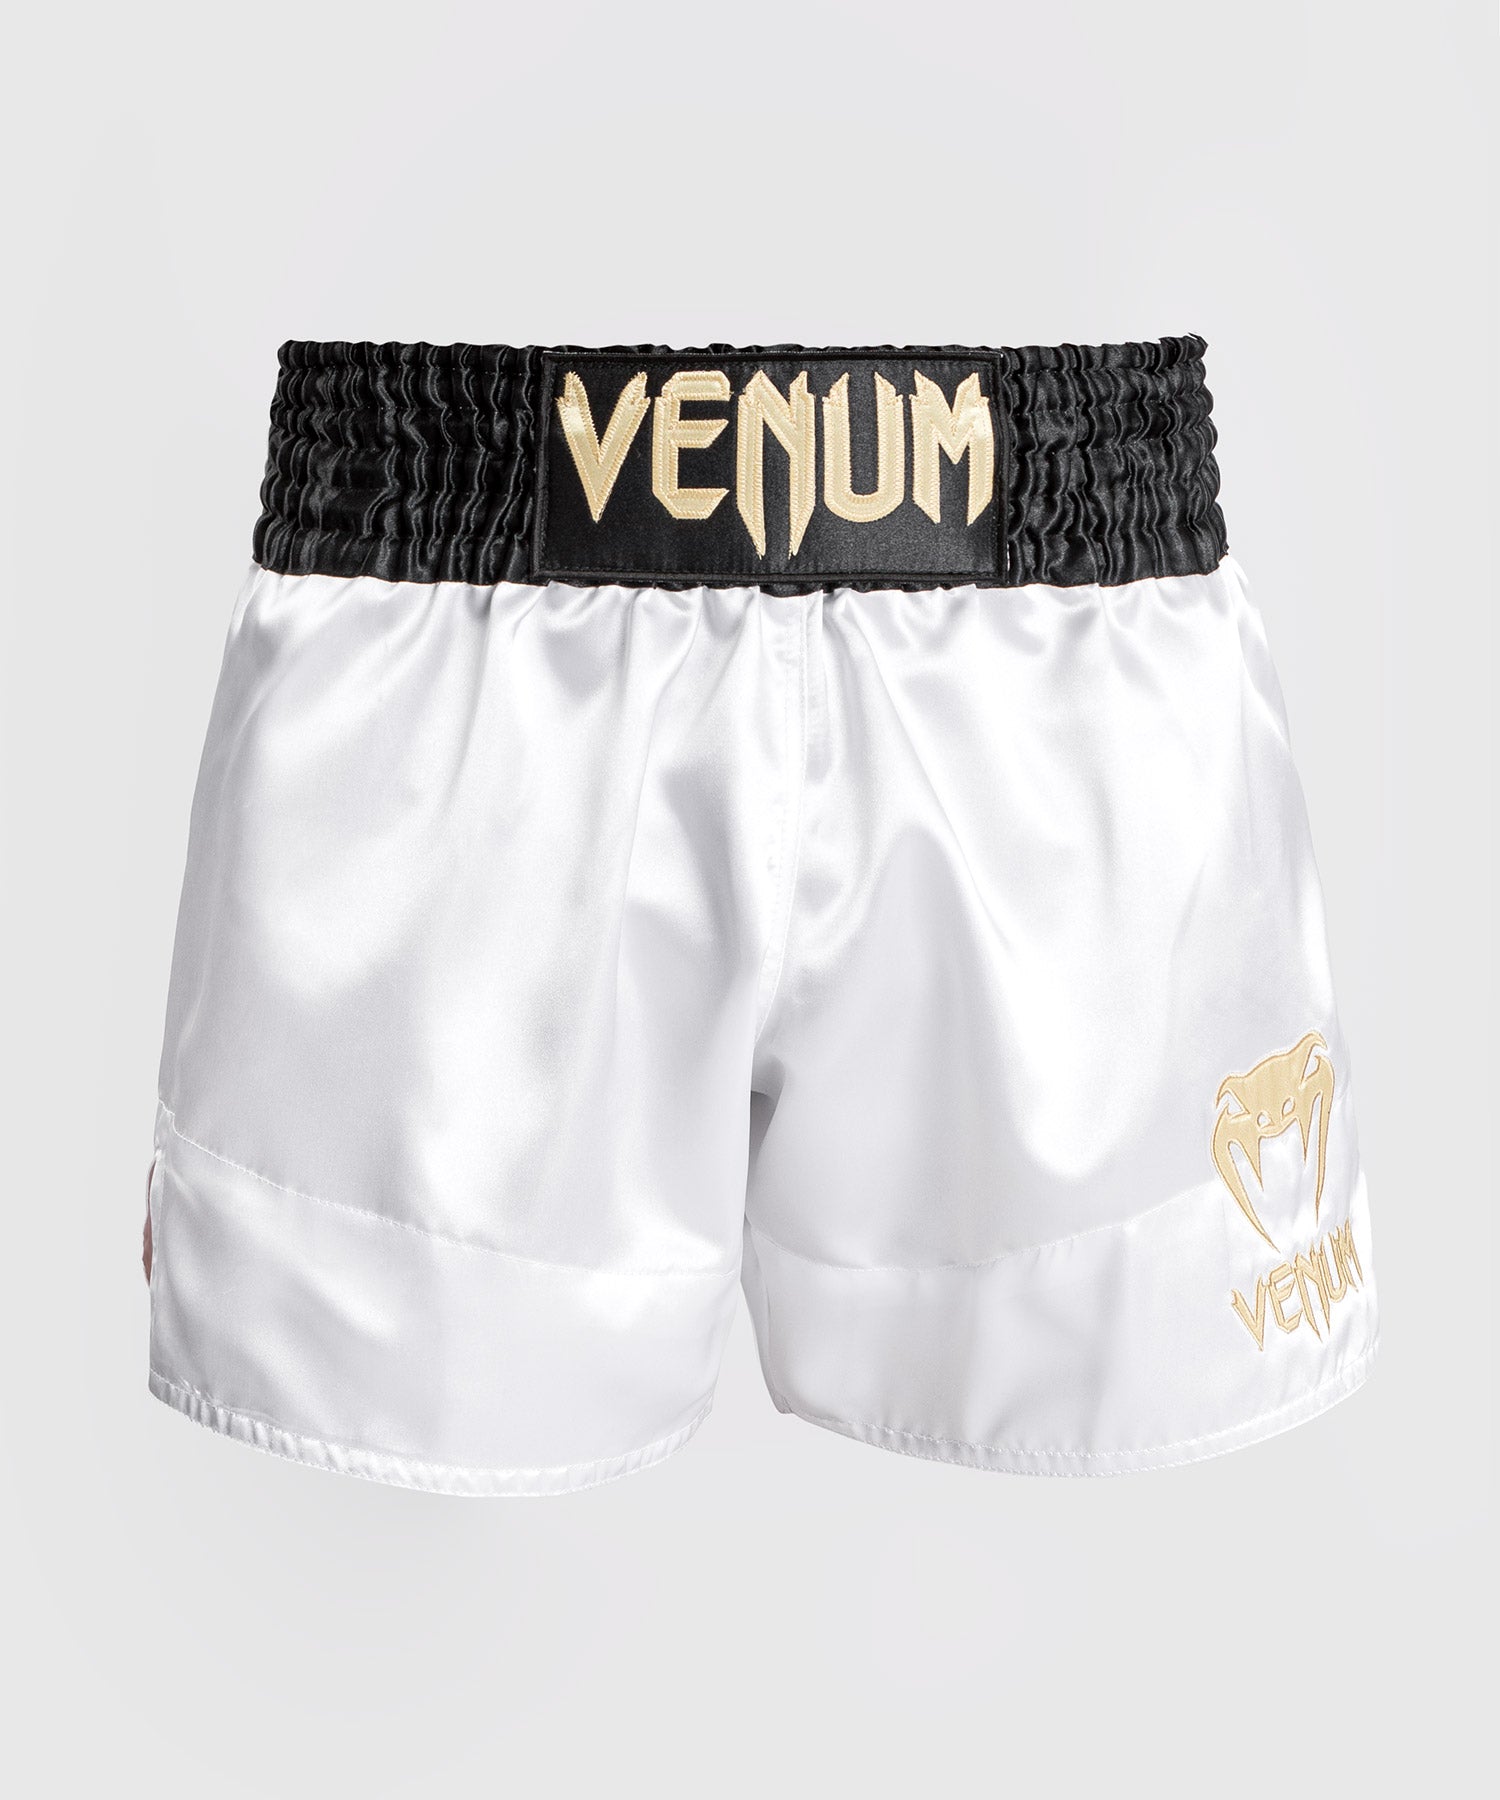 Equipement et vetement Venum : short, tshirt, gants Venum MMA